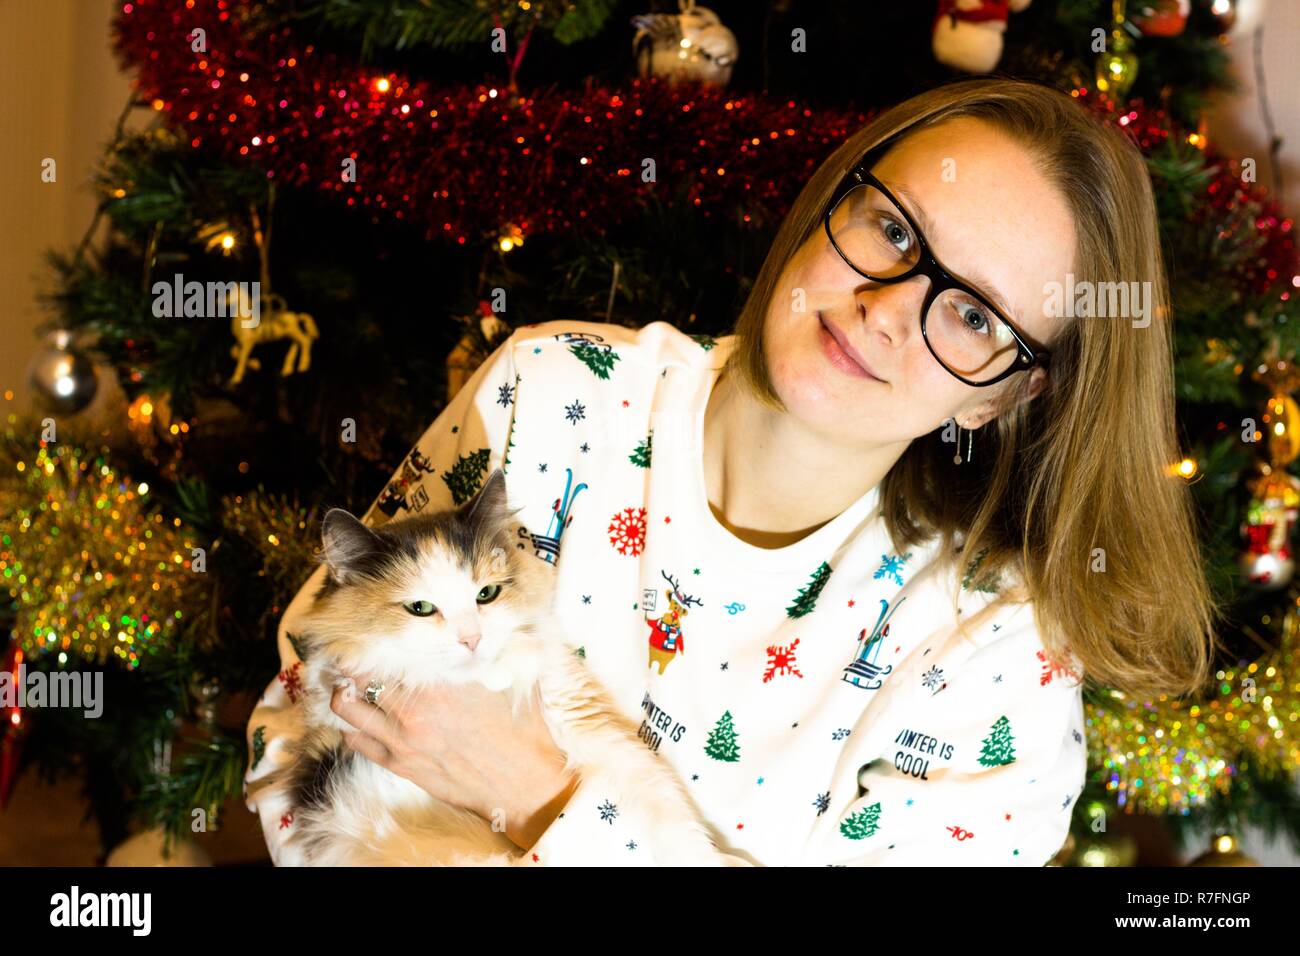 La veille de Noël et Nouvel an fille assise à l'arbre de Noël avec un chat dans ses mains. L'arbre est décoré en prévision de Noël Banque D'Images